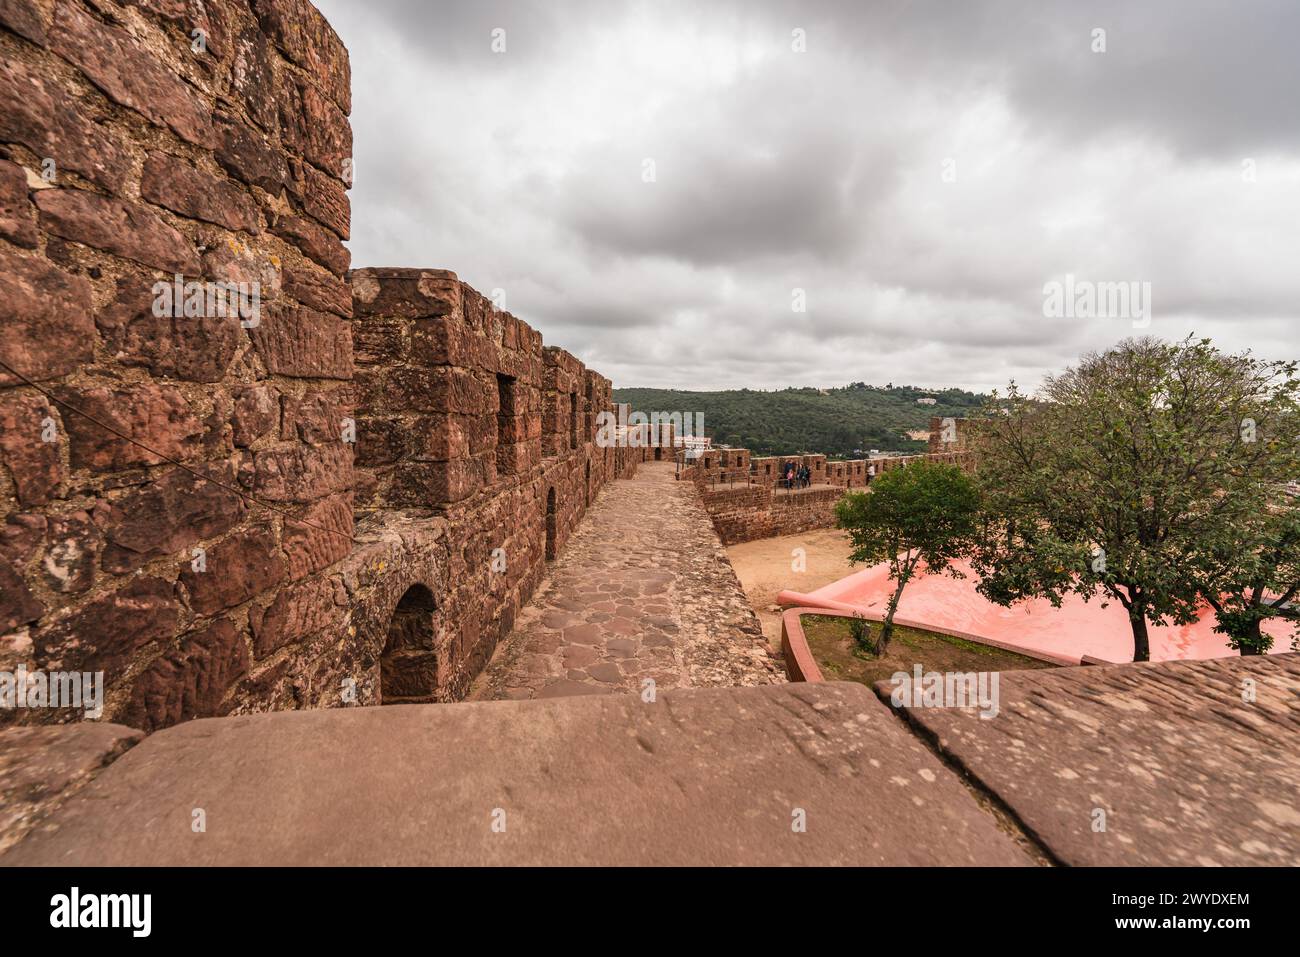 All'interno delle possenti mura rosse del Castello di Silves, un visitatore contempla la vasta storia che si estende davanti a lui Foto Stock